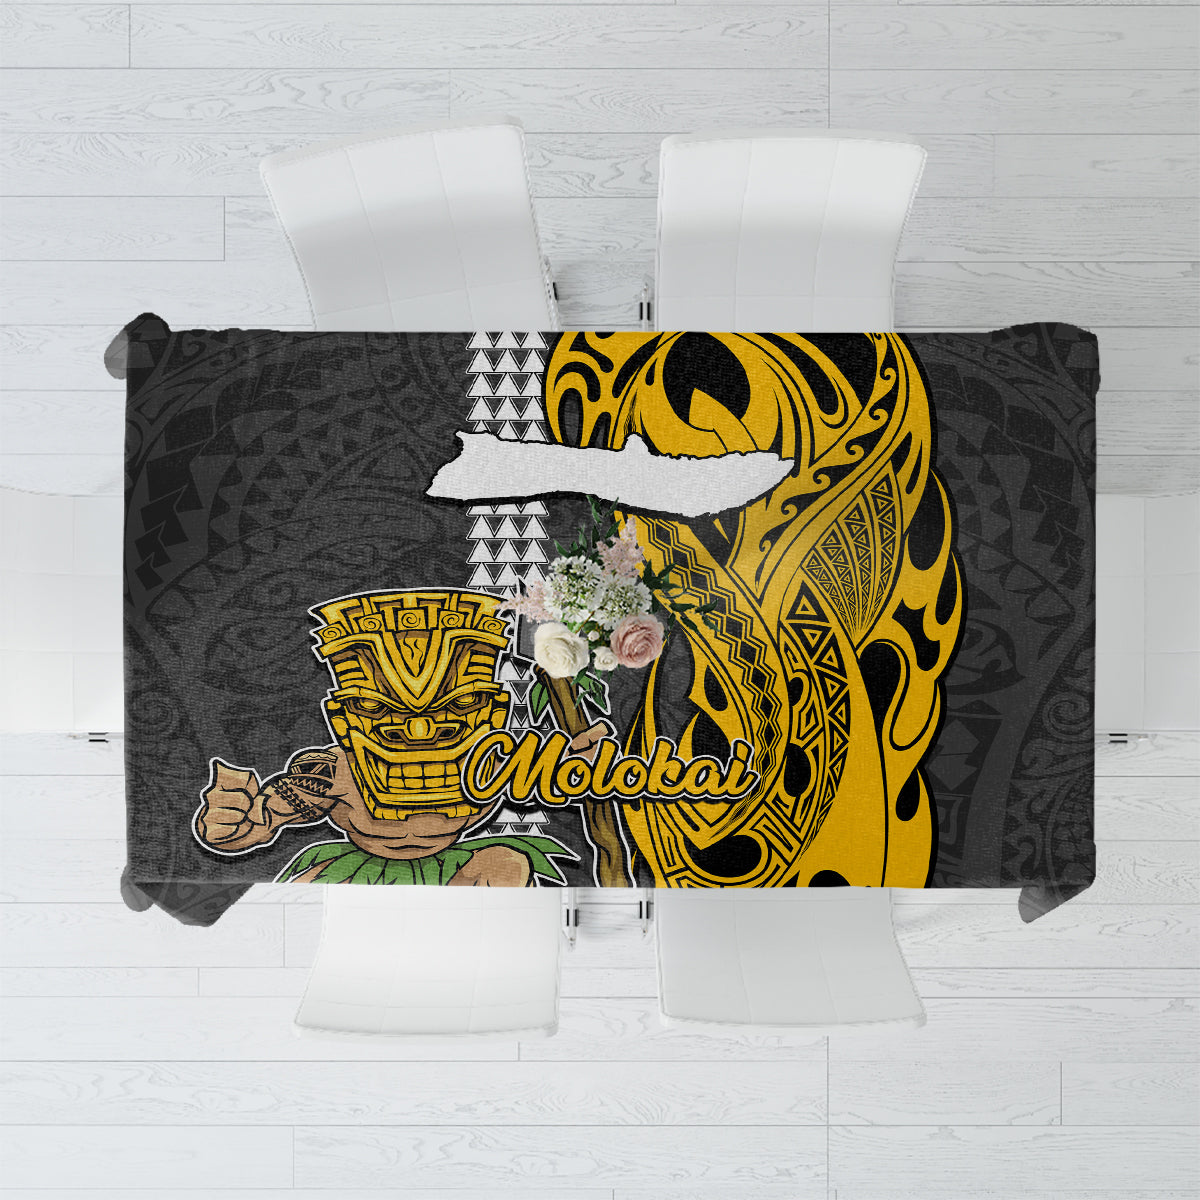 Hawaii Molokai Island Tablecloth Hawaiian Warrior and Kakau Symbols Abstract Tattoo LT03 Yellow - Polynesian Pride